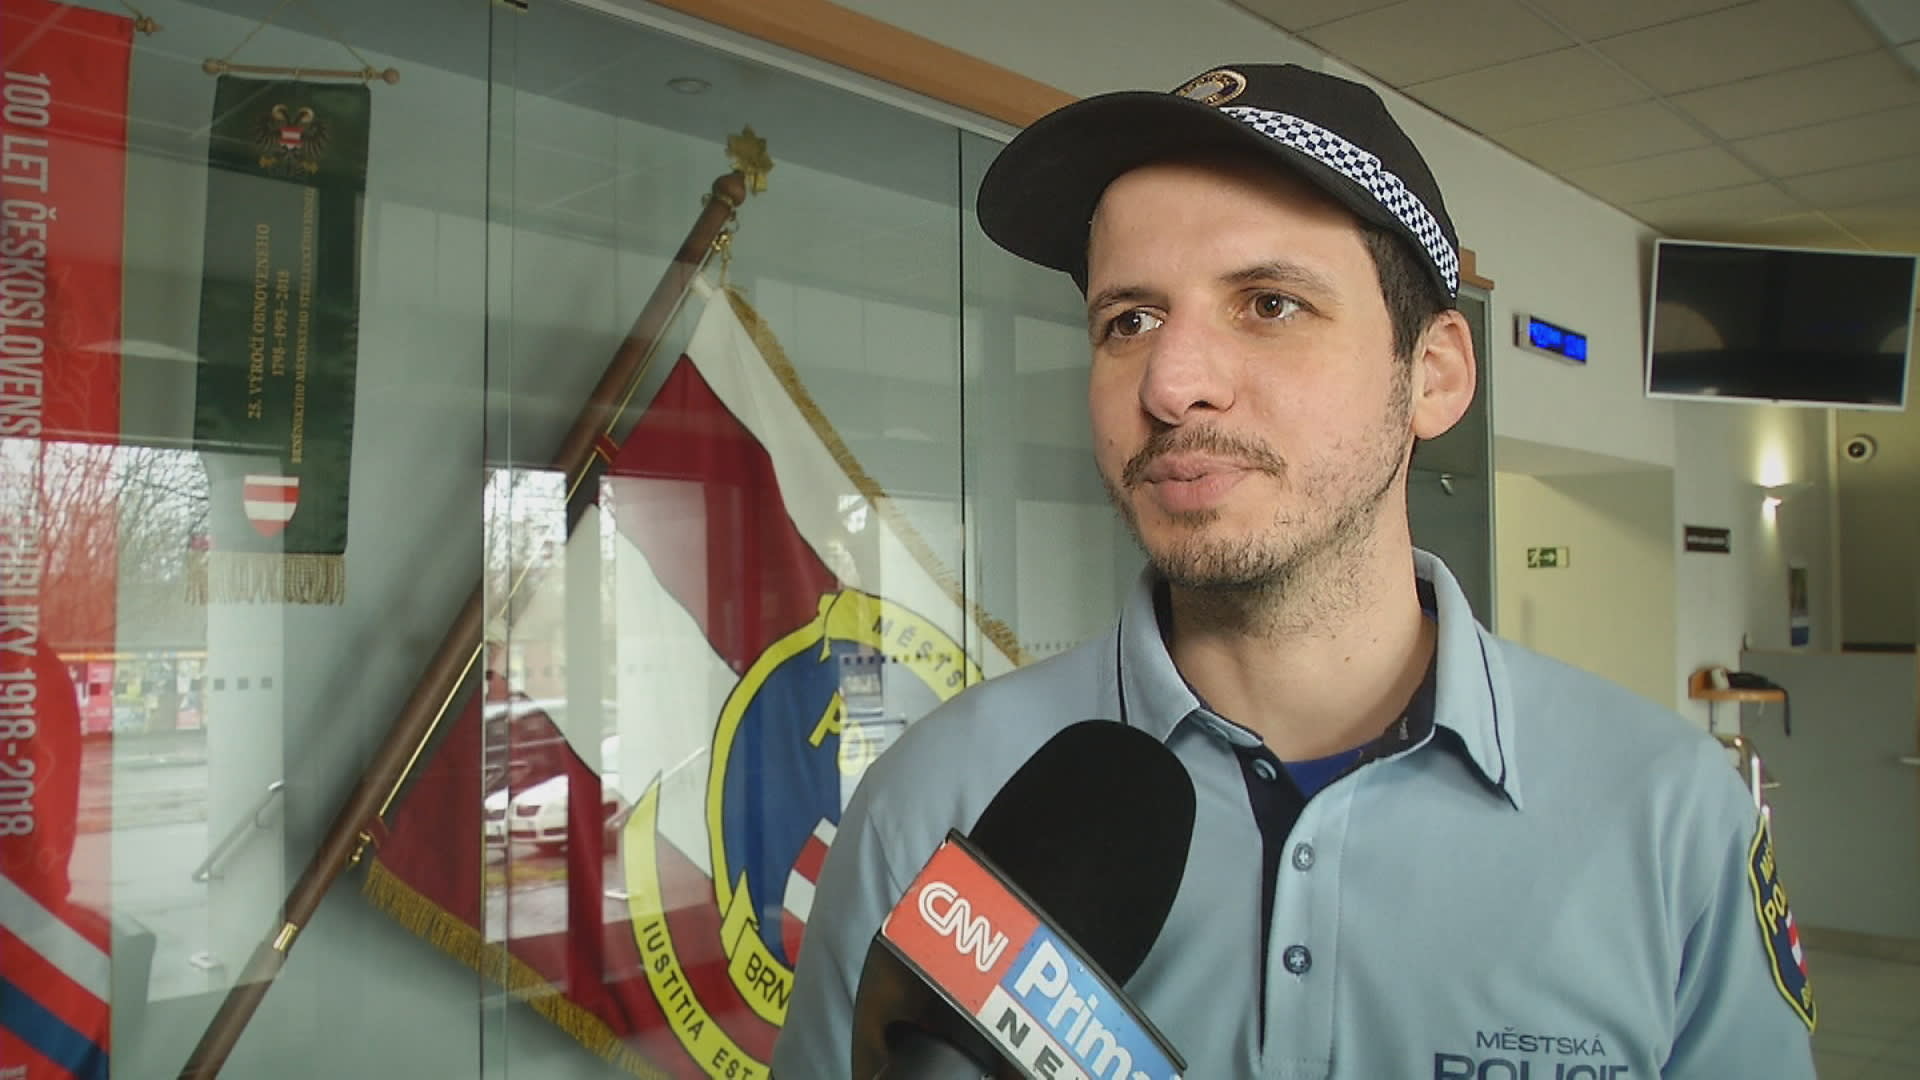 Mluvčí Městské policie Brno Jakub Ghanem